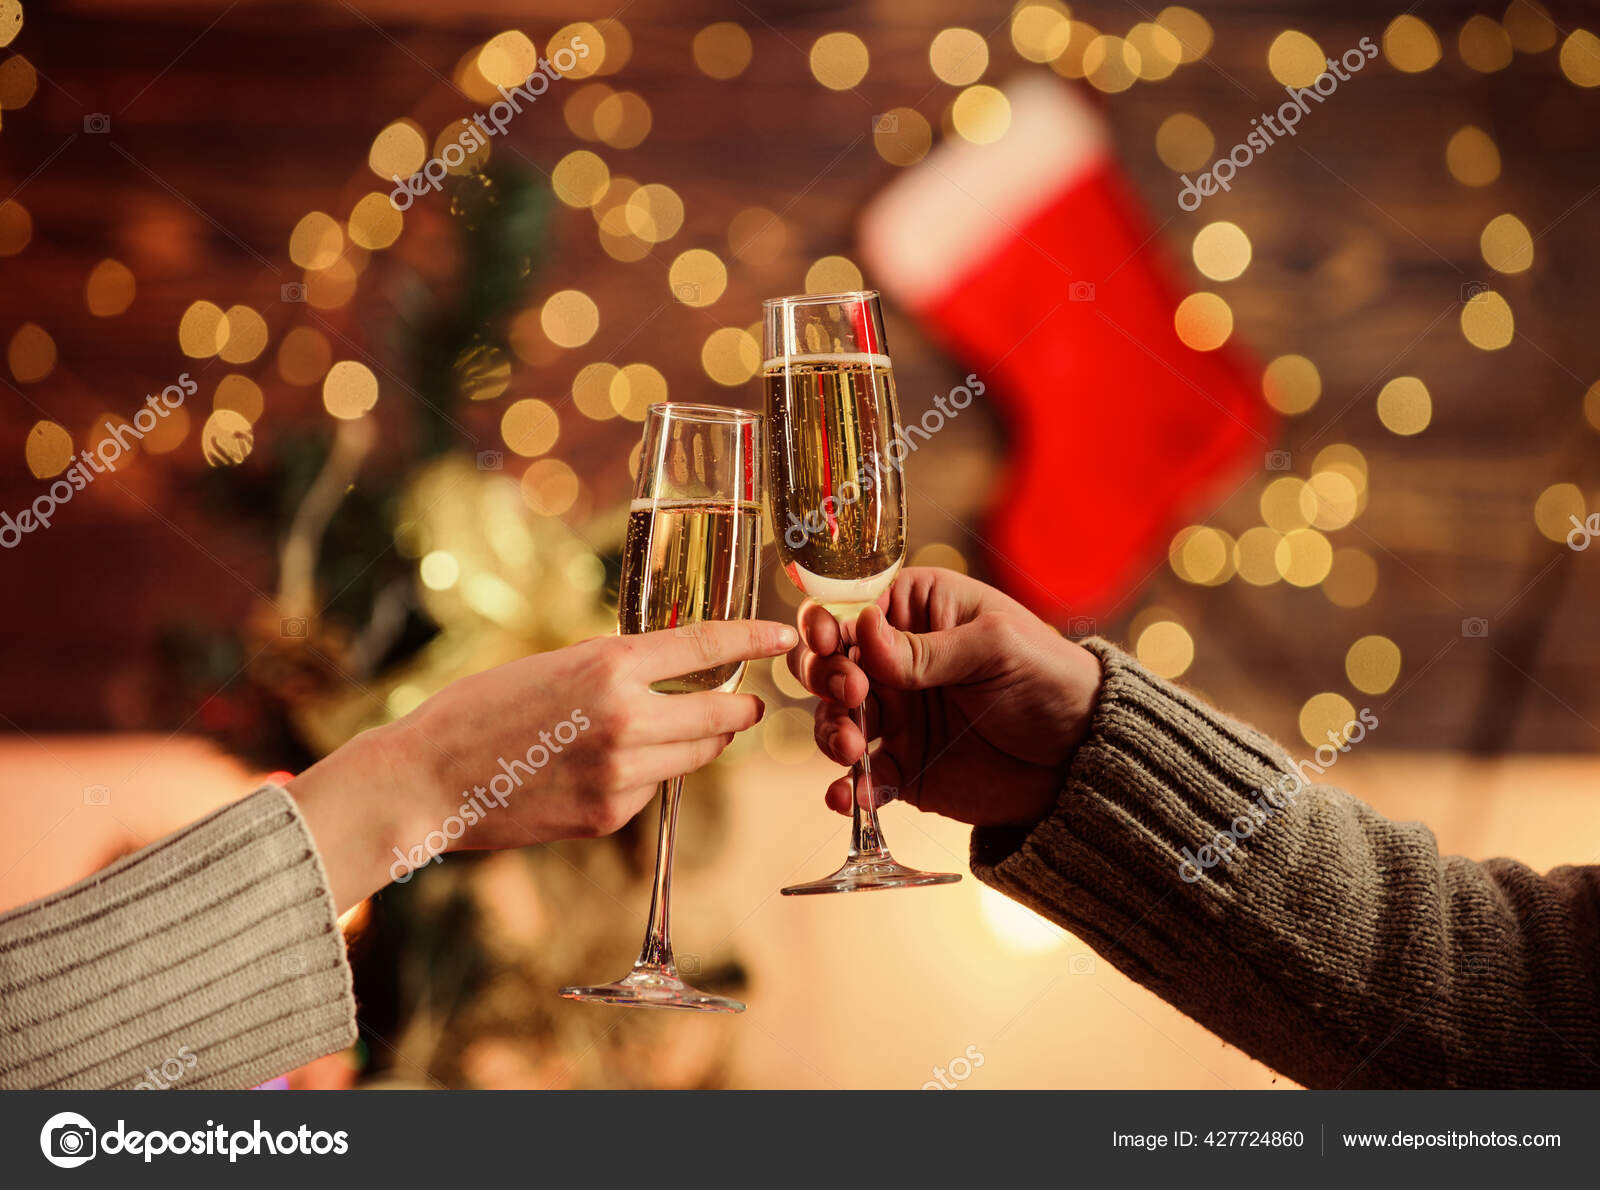 Spreek luid Spruit Rimpelingen Proost. Kerstmis feest vieren. liefde brengt tijd samen door. man toast  champagne vrouw. Familieweekend. van elkaar houden. Verliefd stel. Vrolijk  kerstfeest. Gelukkig nieuwjaar. wintervakantie ⬇ Stockfoto, rechtenvrije  foto door © stetsik #427724860